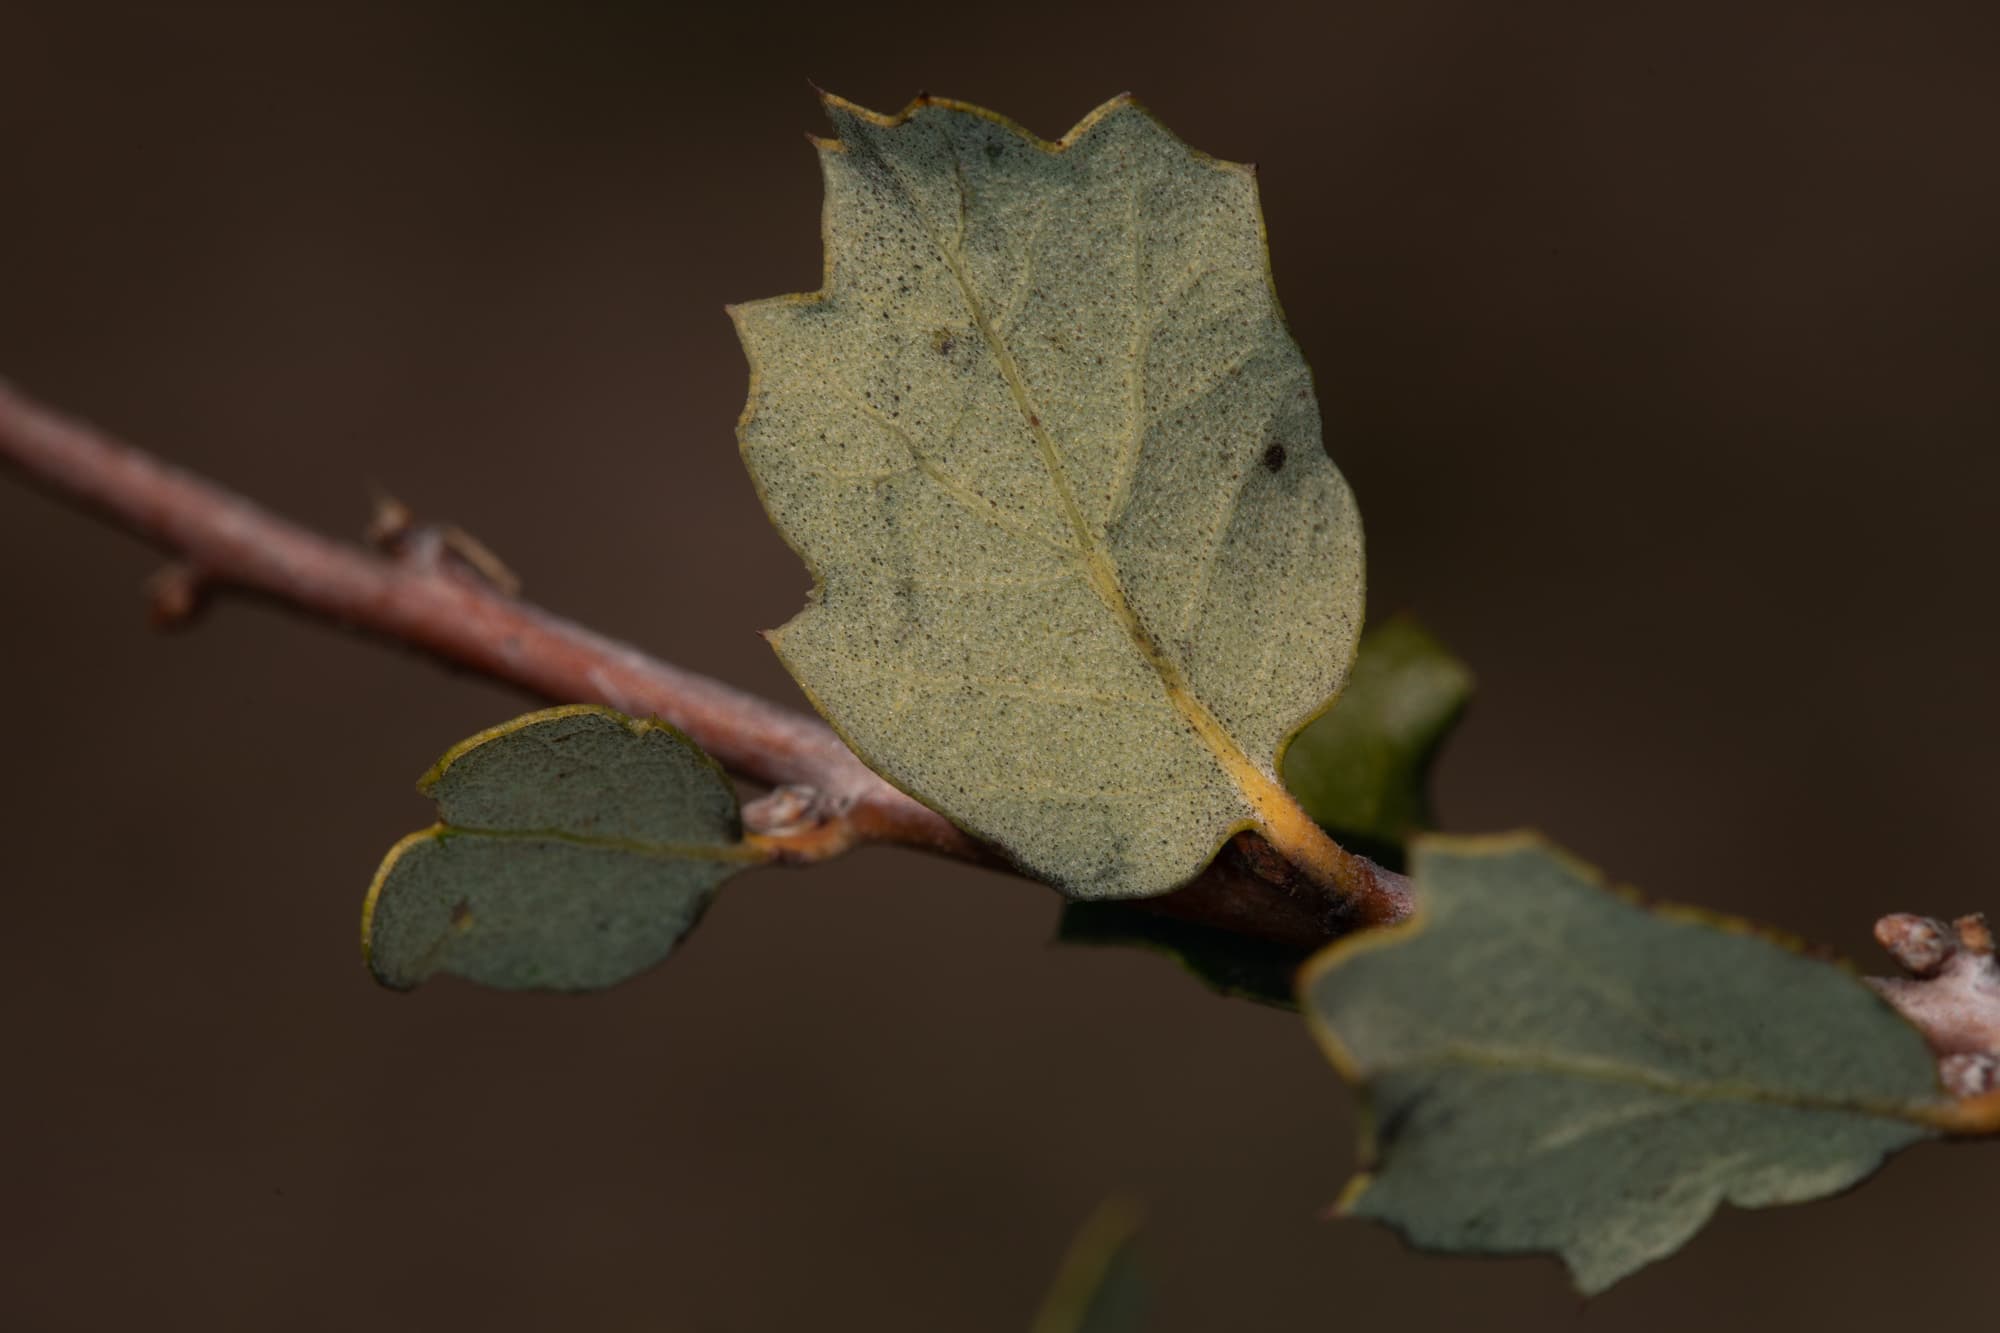  Scrub Oak - <em>Quercus berberidifolia</em>